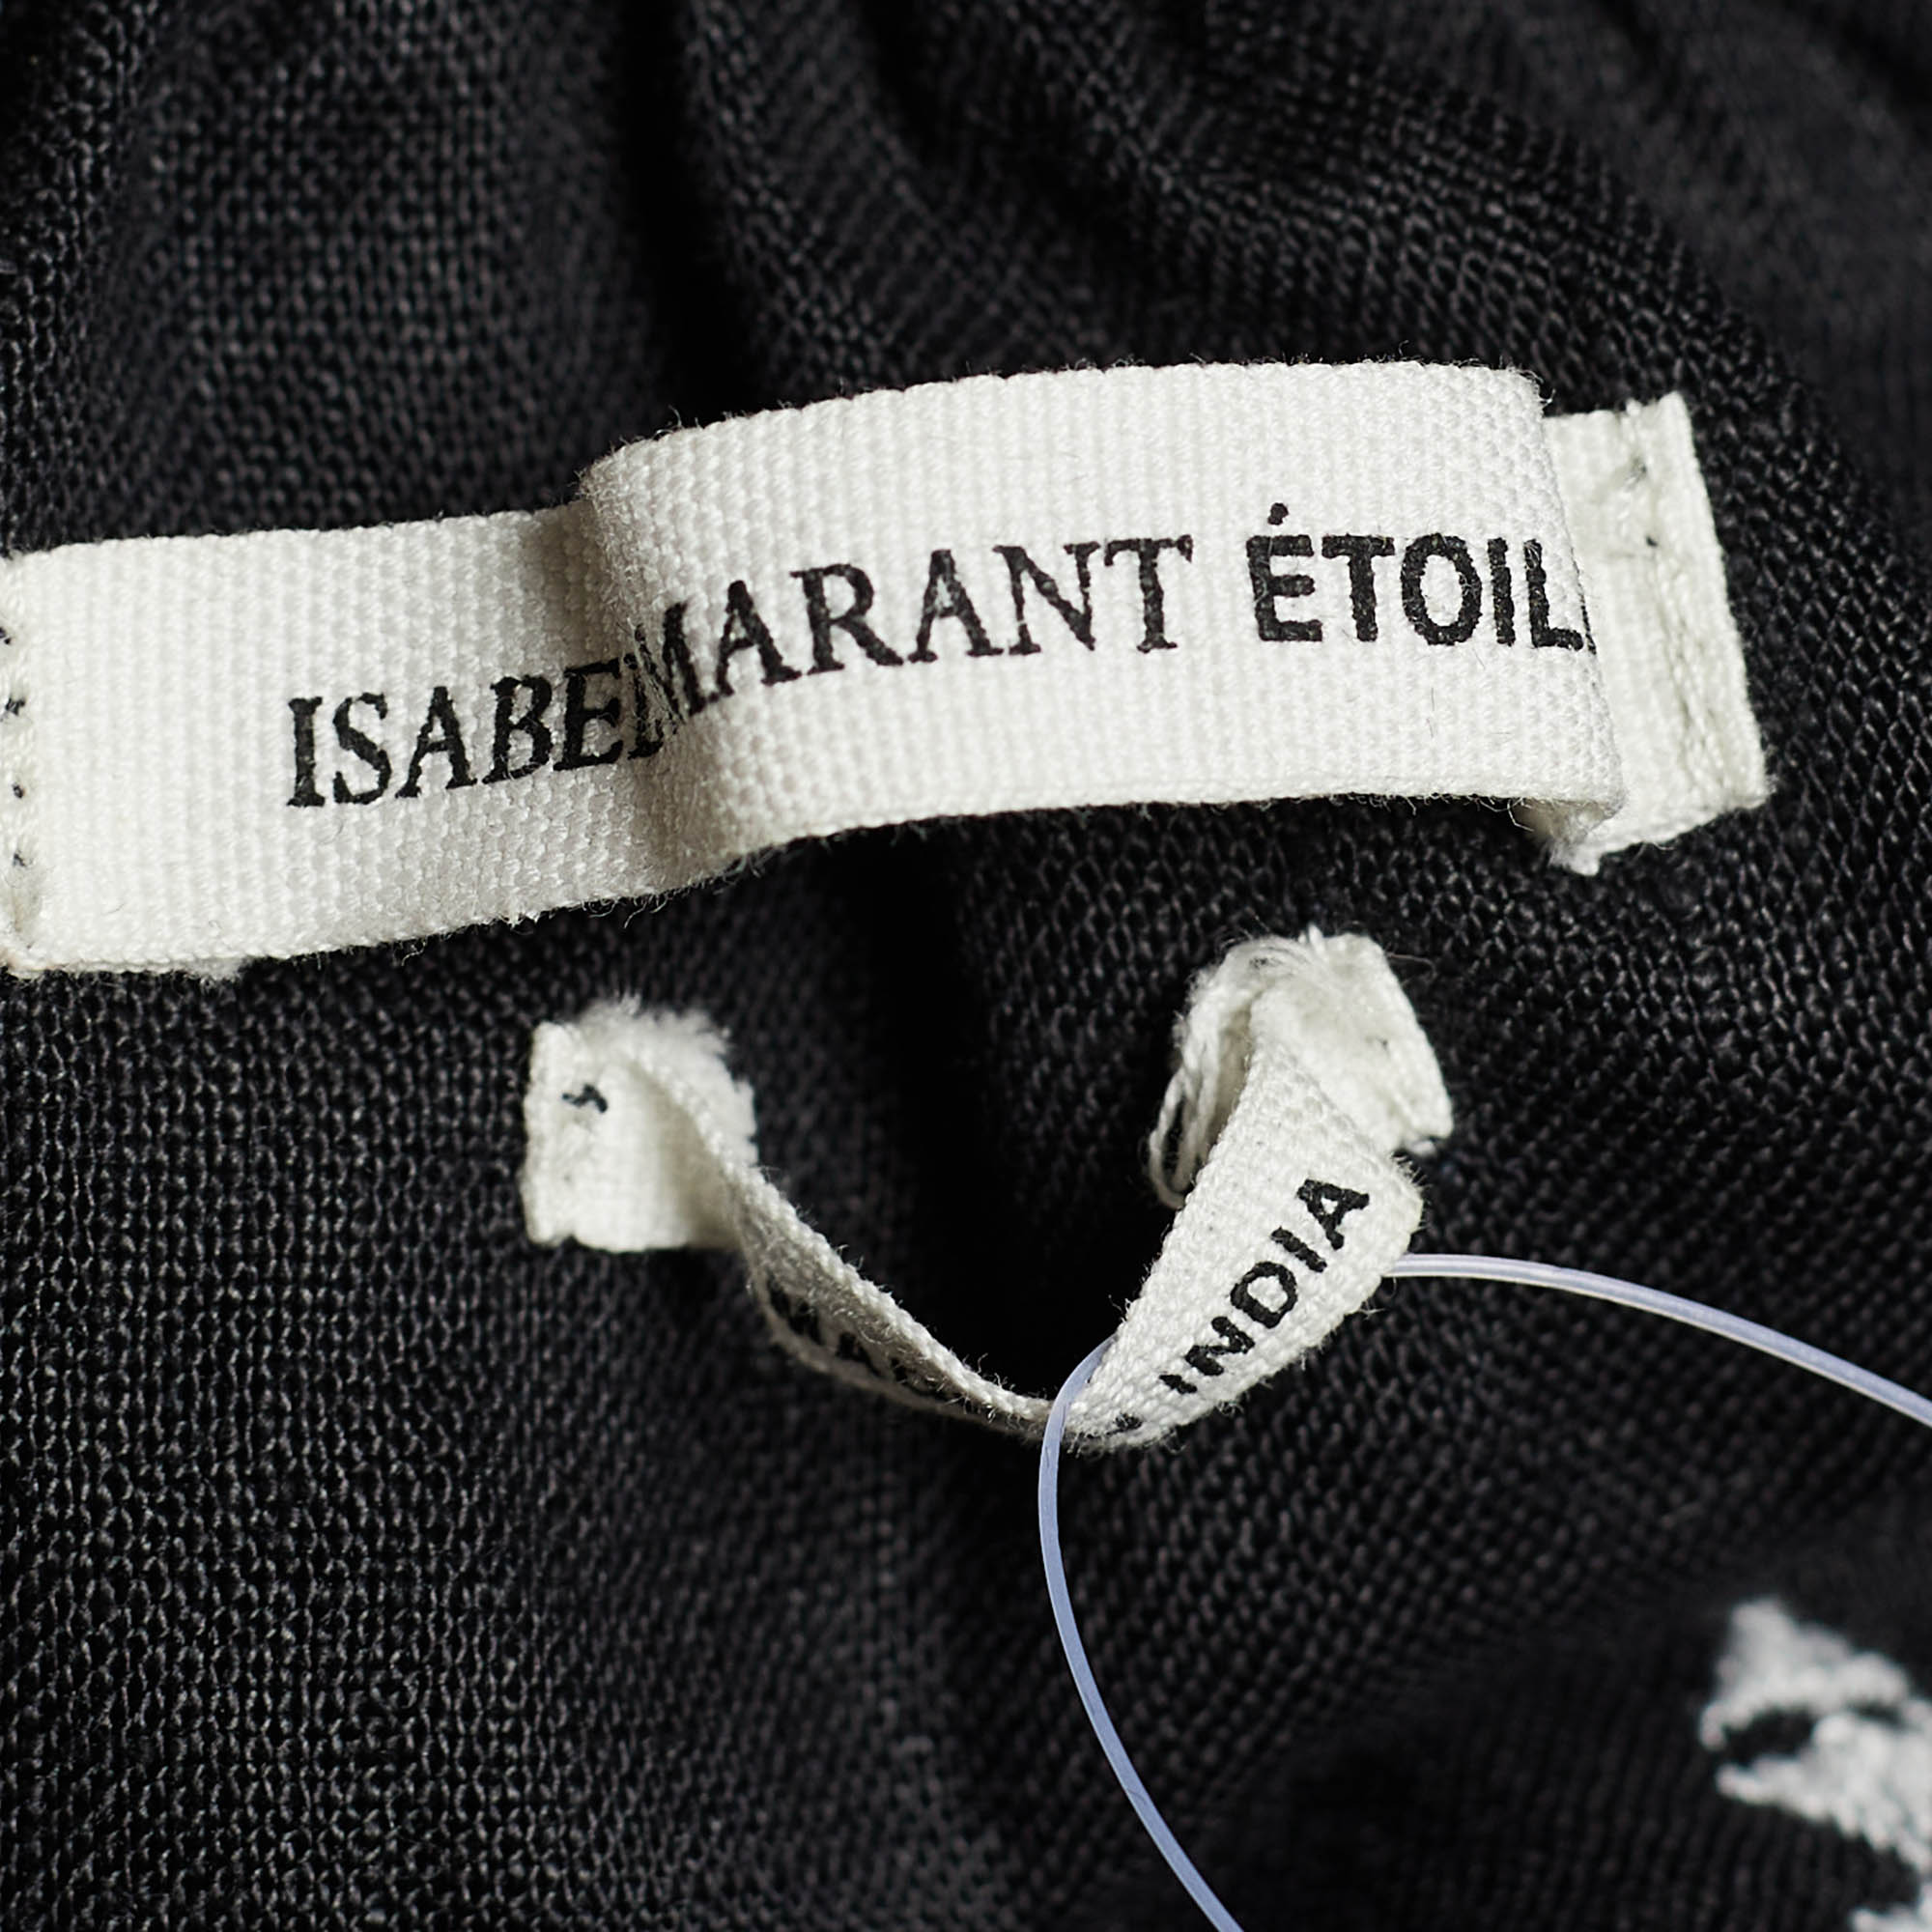 Isabel Marant Black Embroidered Linen Flared Blouse L